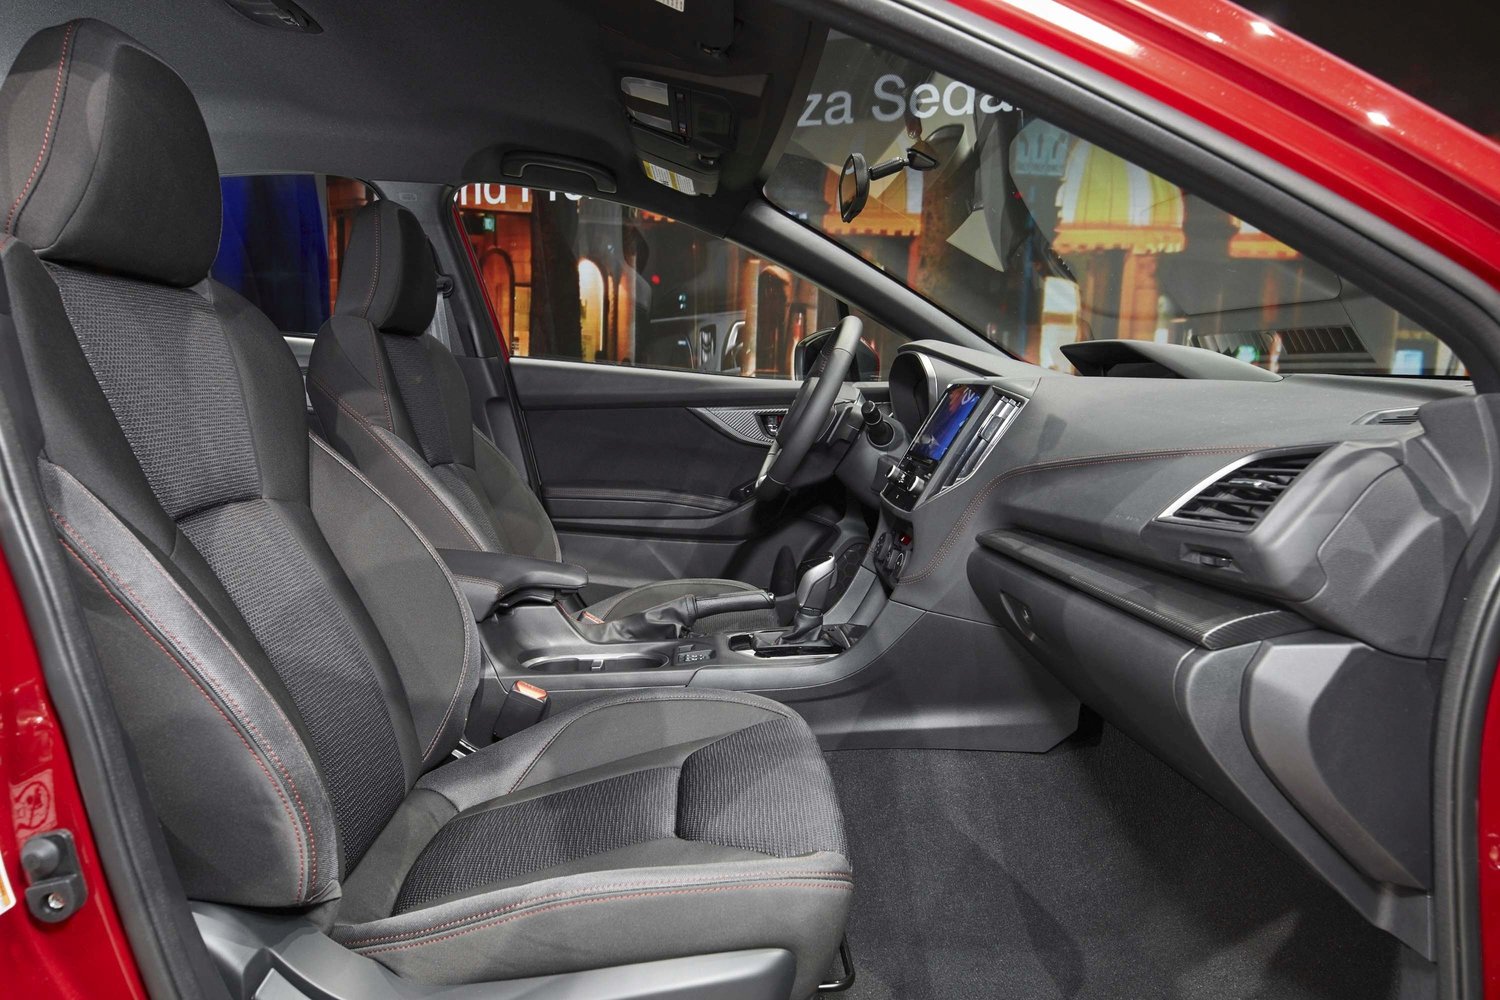 седан Subaru Impreza 2016г выпуска модификация 2.0 CVT (152 л.с.) 4×4